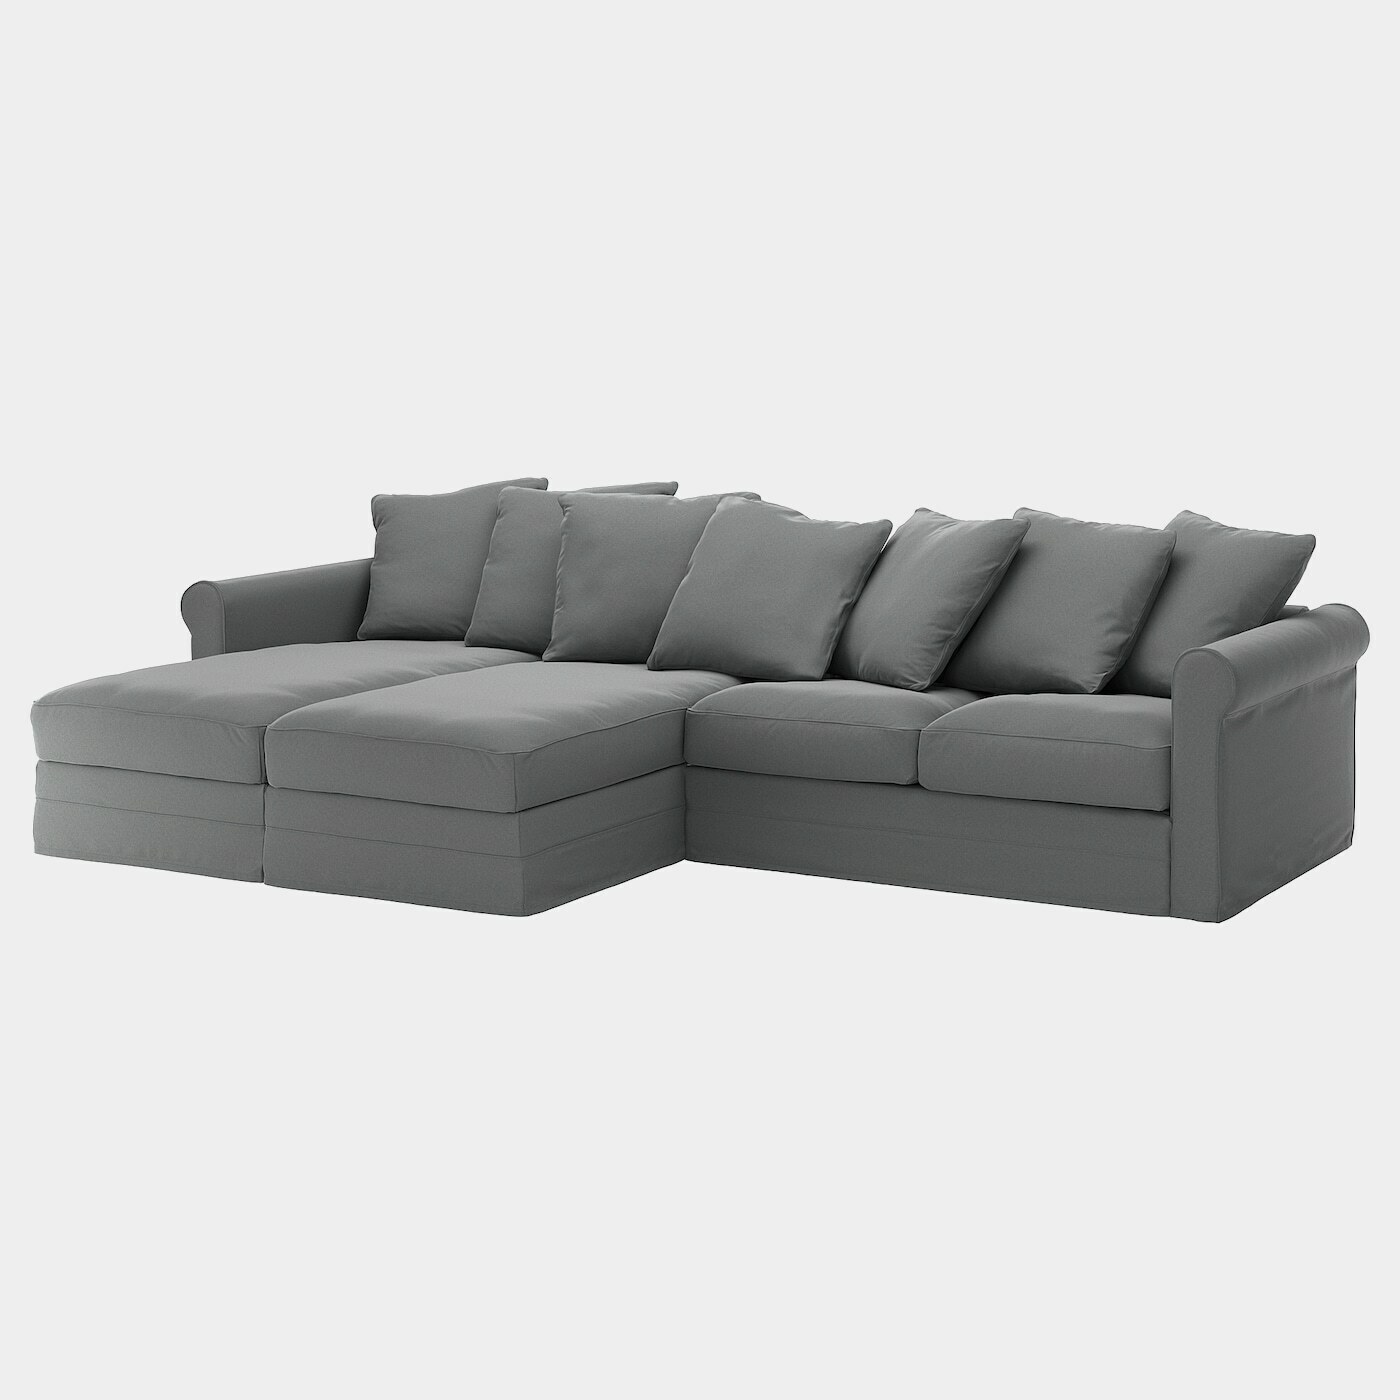 GRÖNLID 4er-Sofa mit Récamieren  -  - Möbel Ideen für dein Zuhause von Home Trends. Möbel Trends von Social Media Influencer für dein Skandi Zuhause.